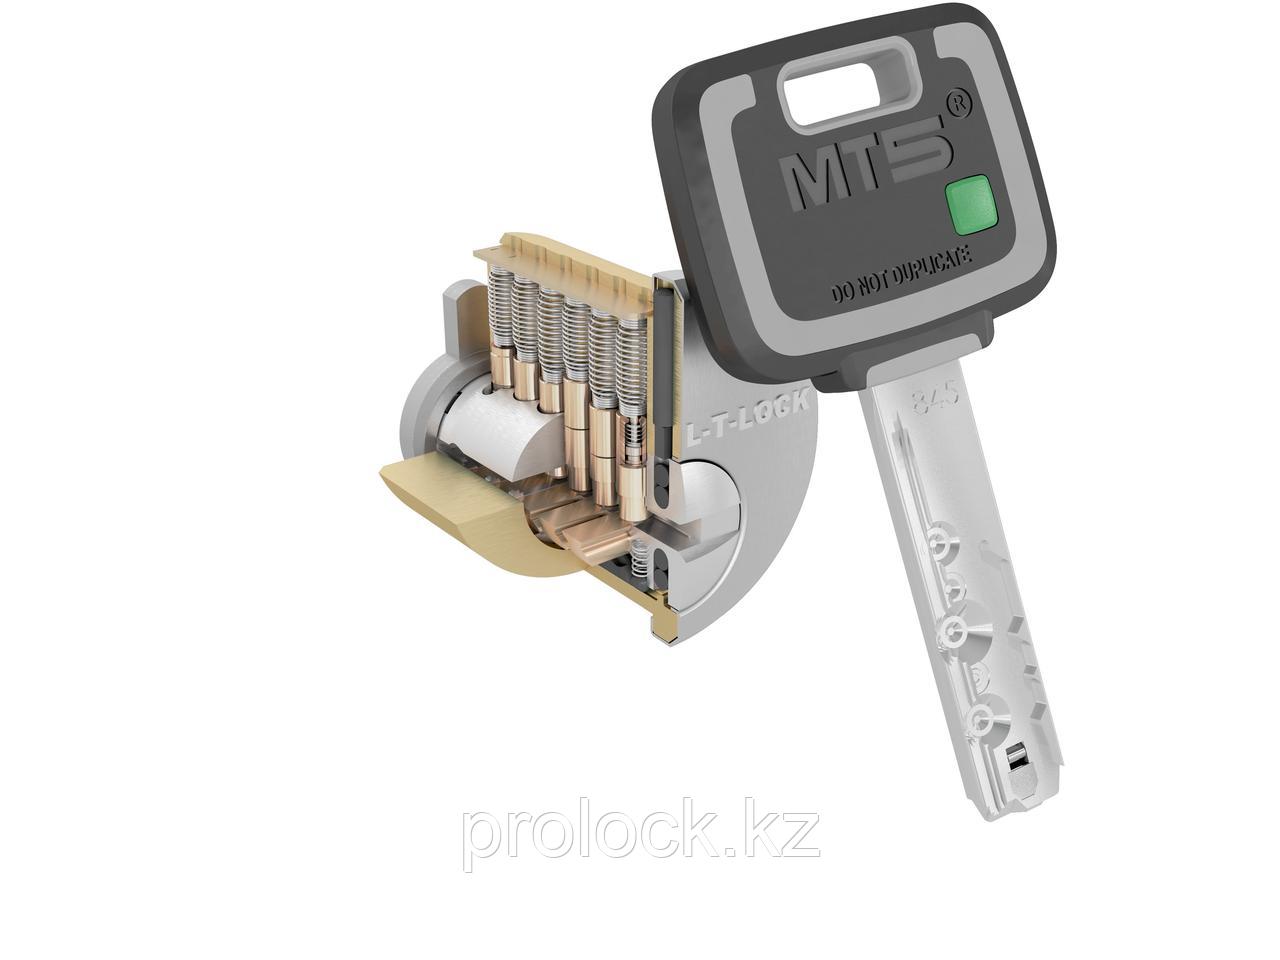 Сердцевина Mul-T-lock MT5+ 45/45 (90) - Новое поколение высокосекретных цилиндров